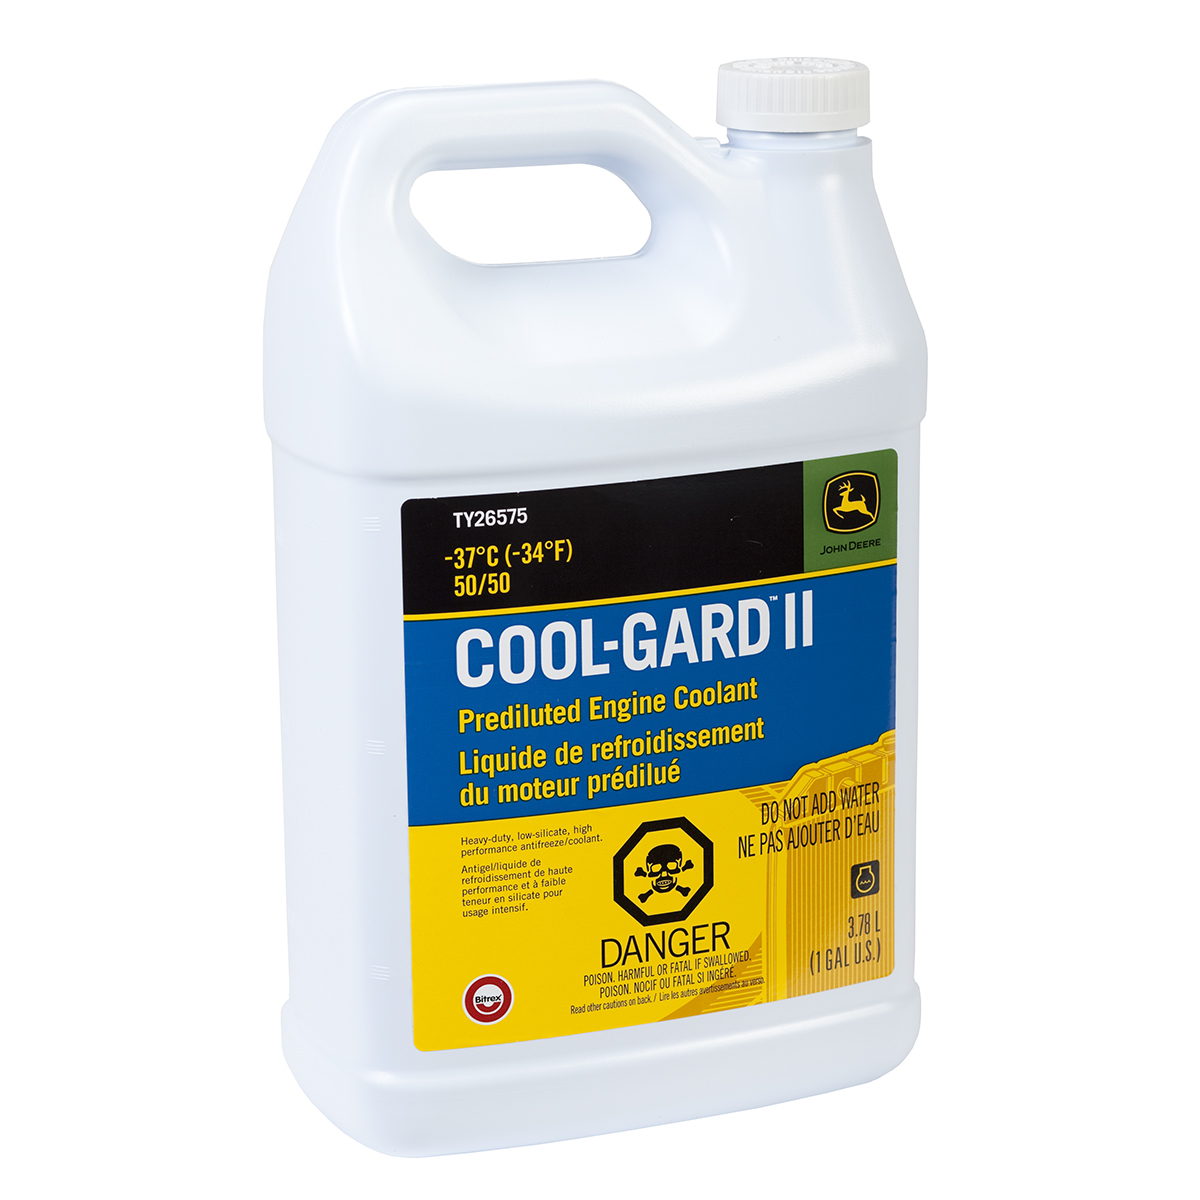 Cool-Gard II Pre-Mix, 1 gallon